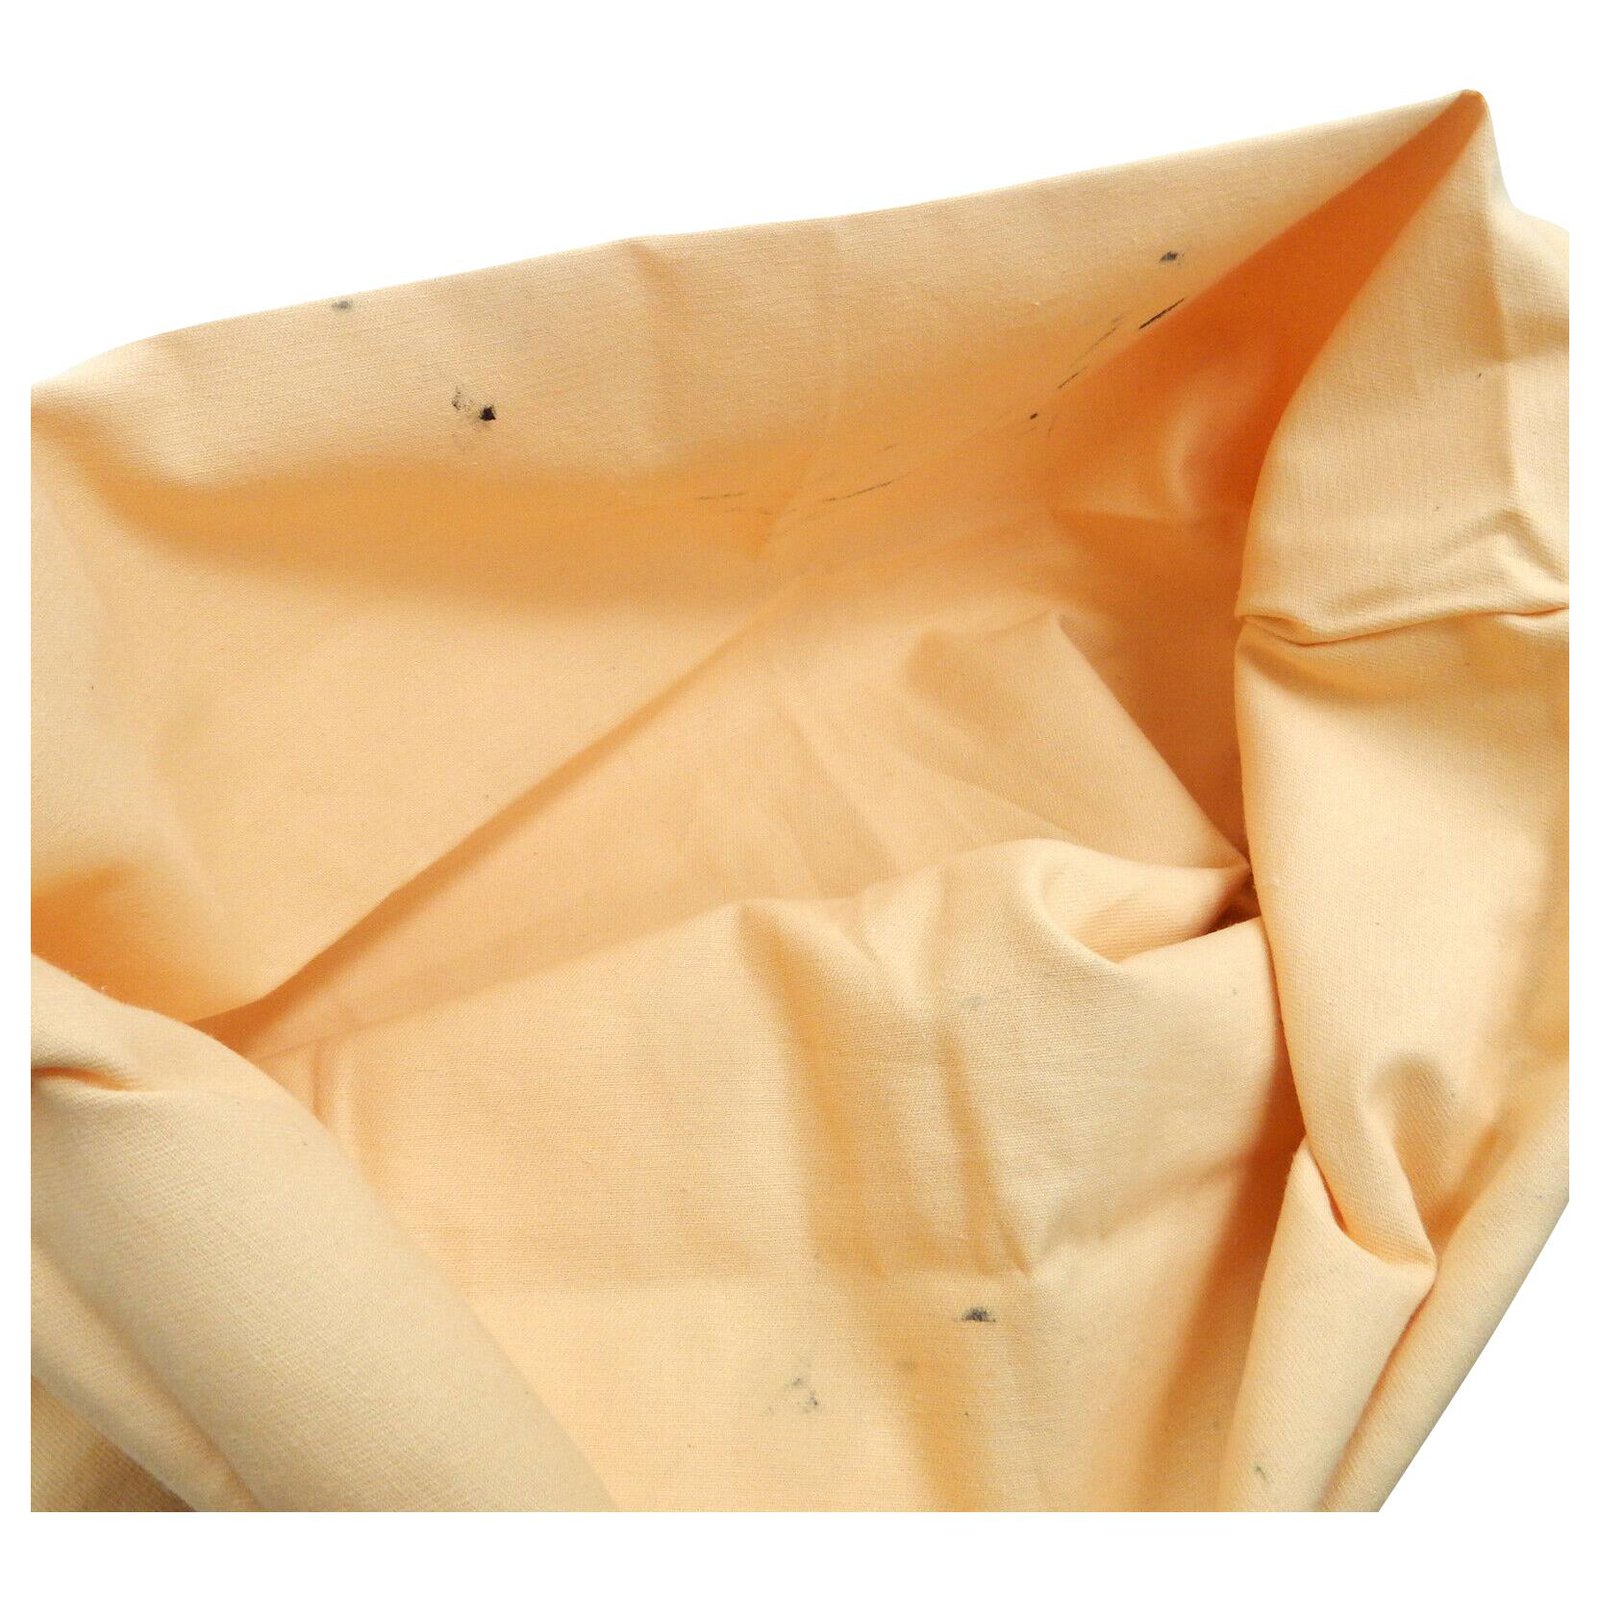 Louis Vuitton Envelope Dust Cover Bag Cotton ref.174006 - Joli Closet